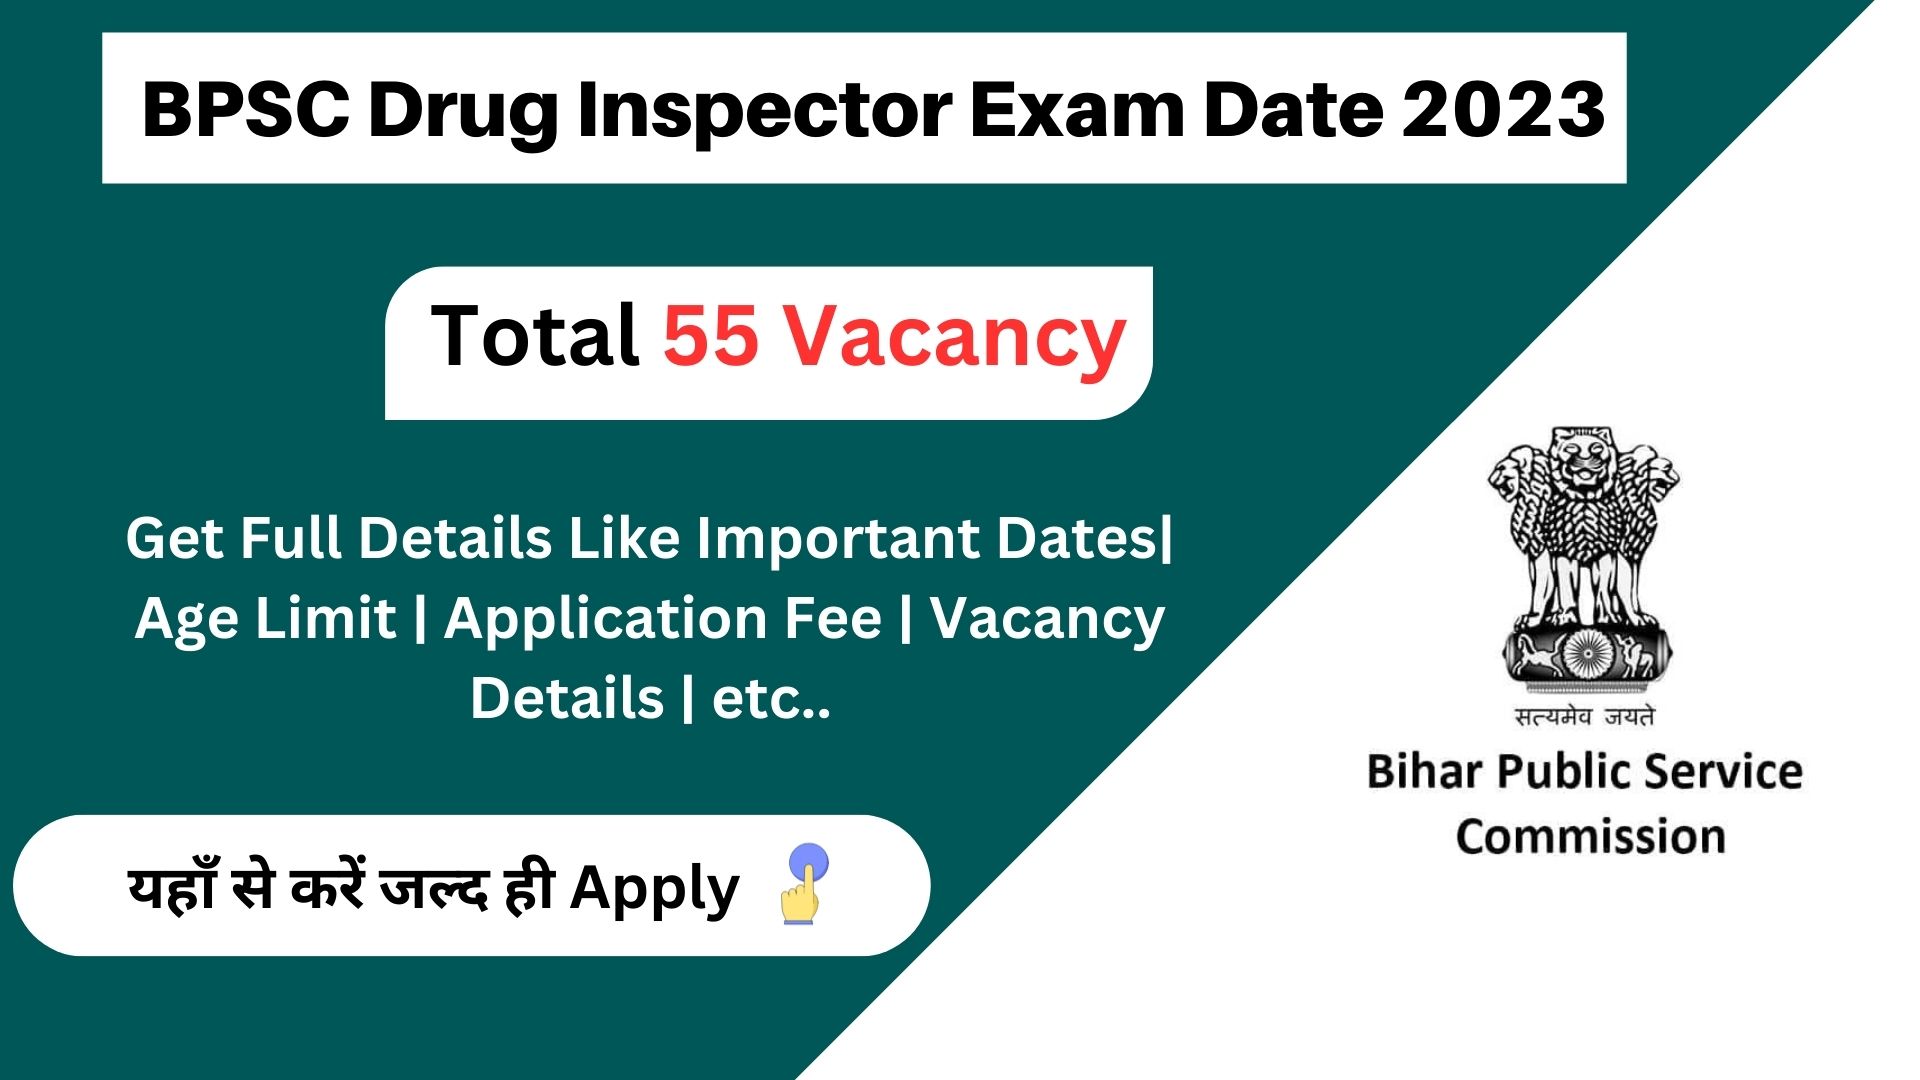 BPSC Drug Inspector Exam Date 2023